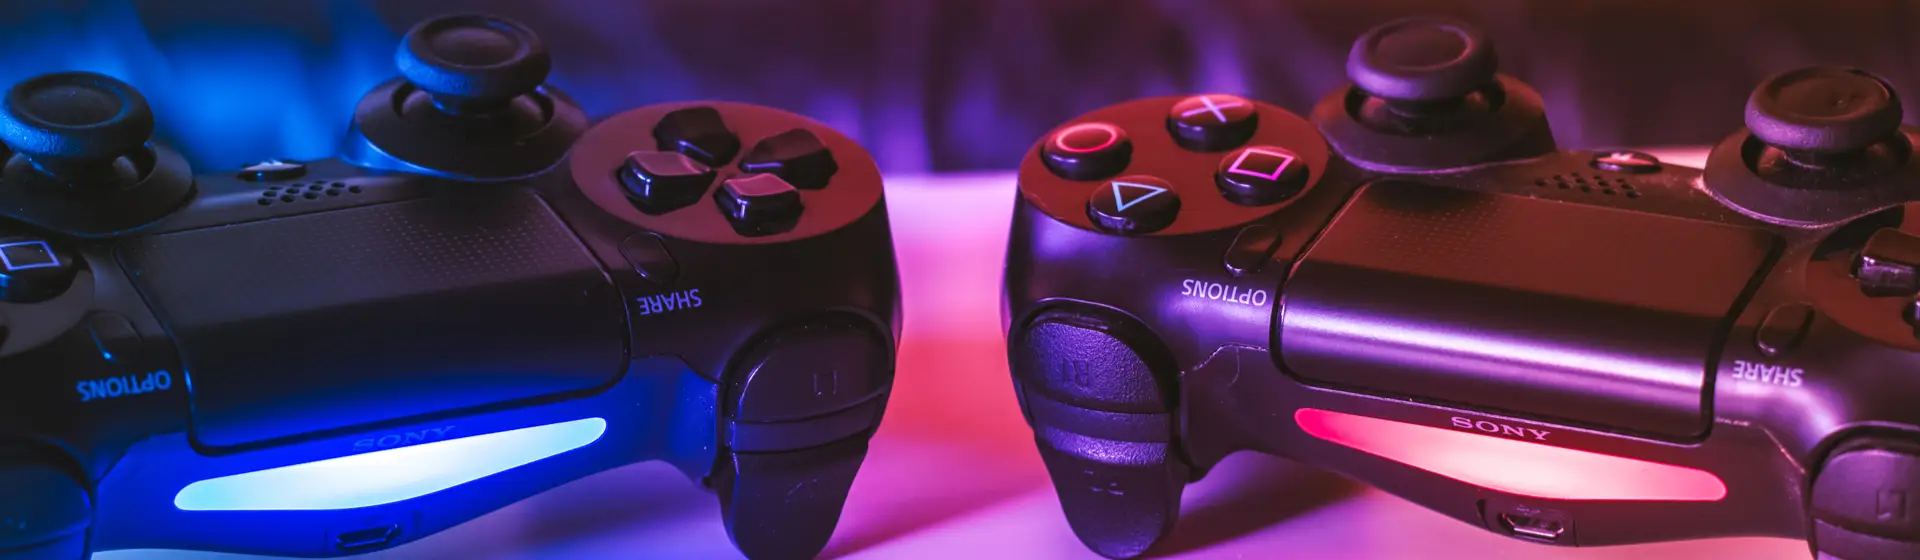 Controle compatível com PS4 Dualshock 4 sem Fio para Jogos Online